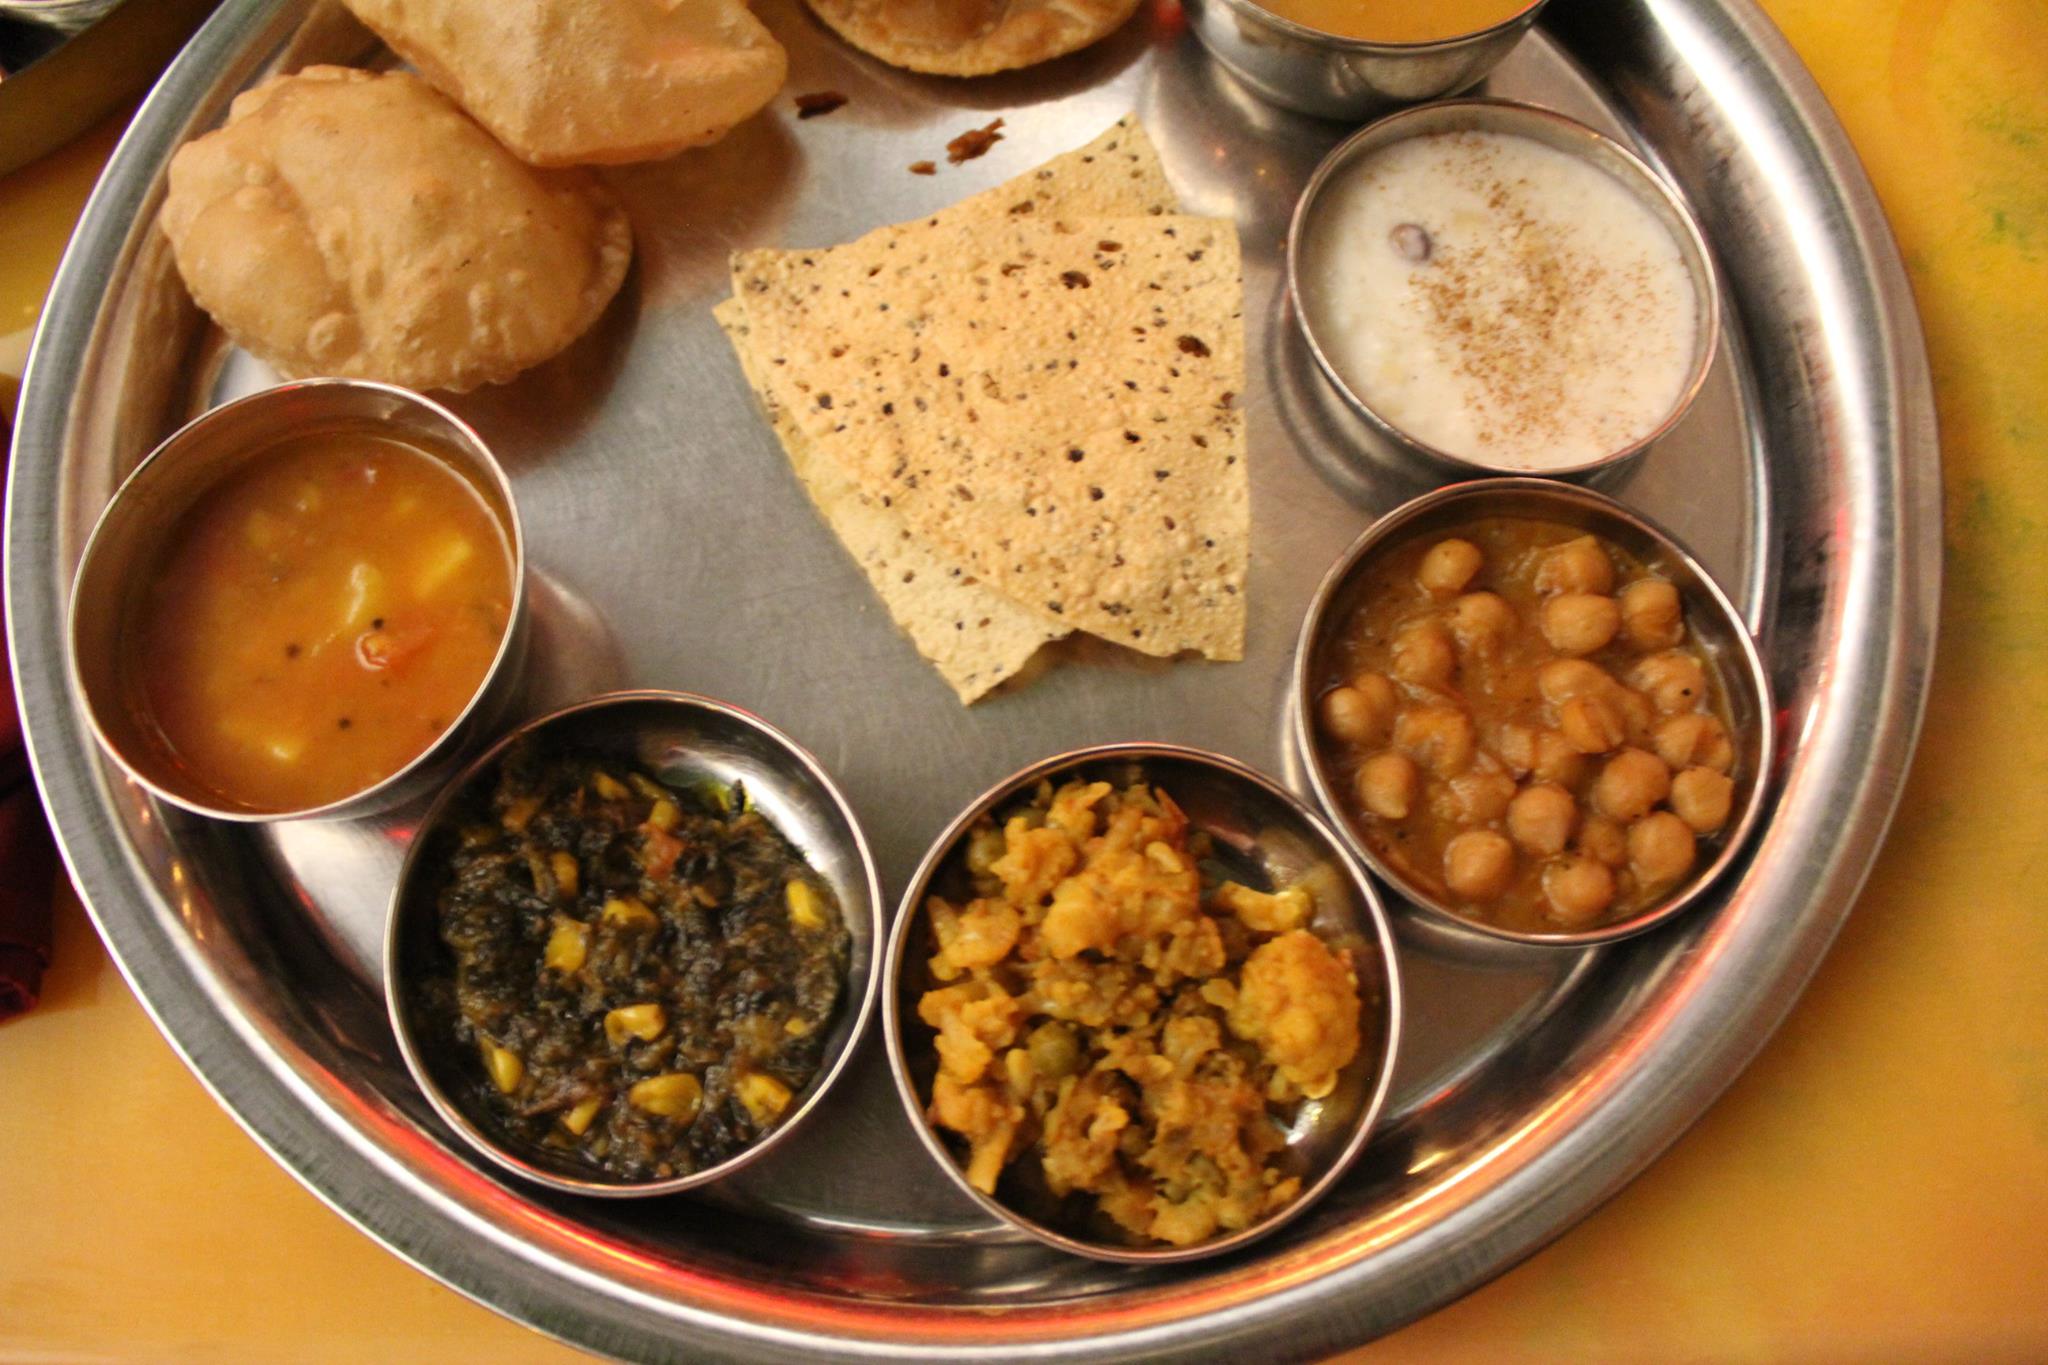 Vatan מסעדה כשרה הודית צמחונית